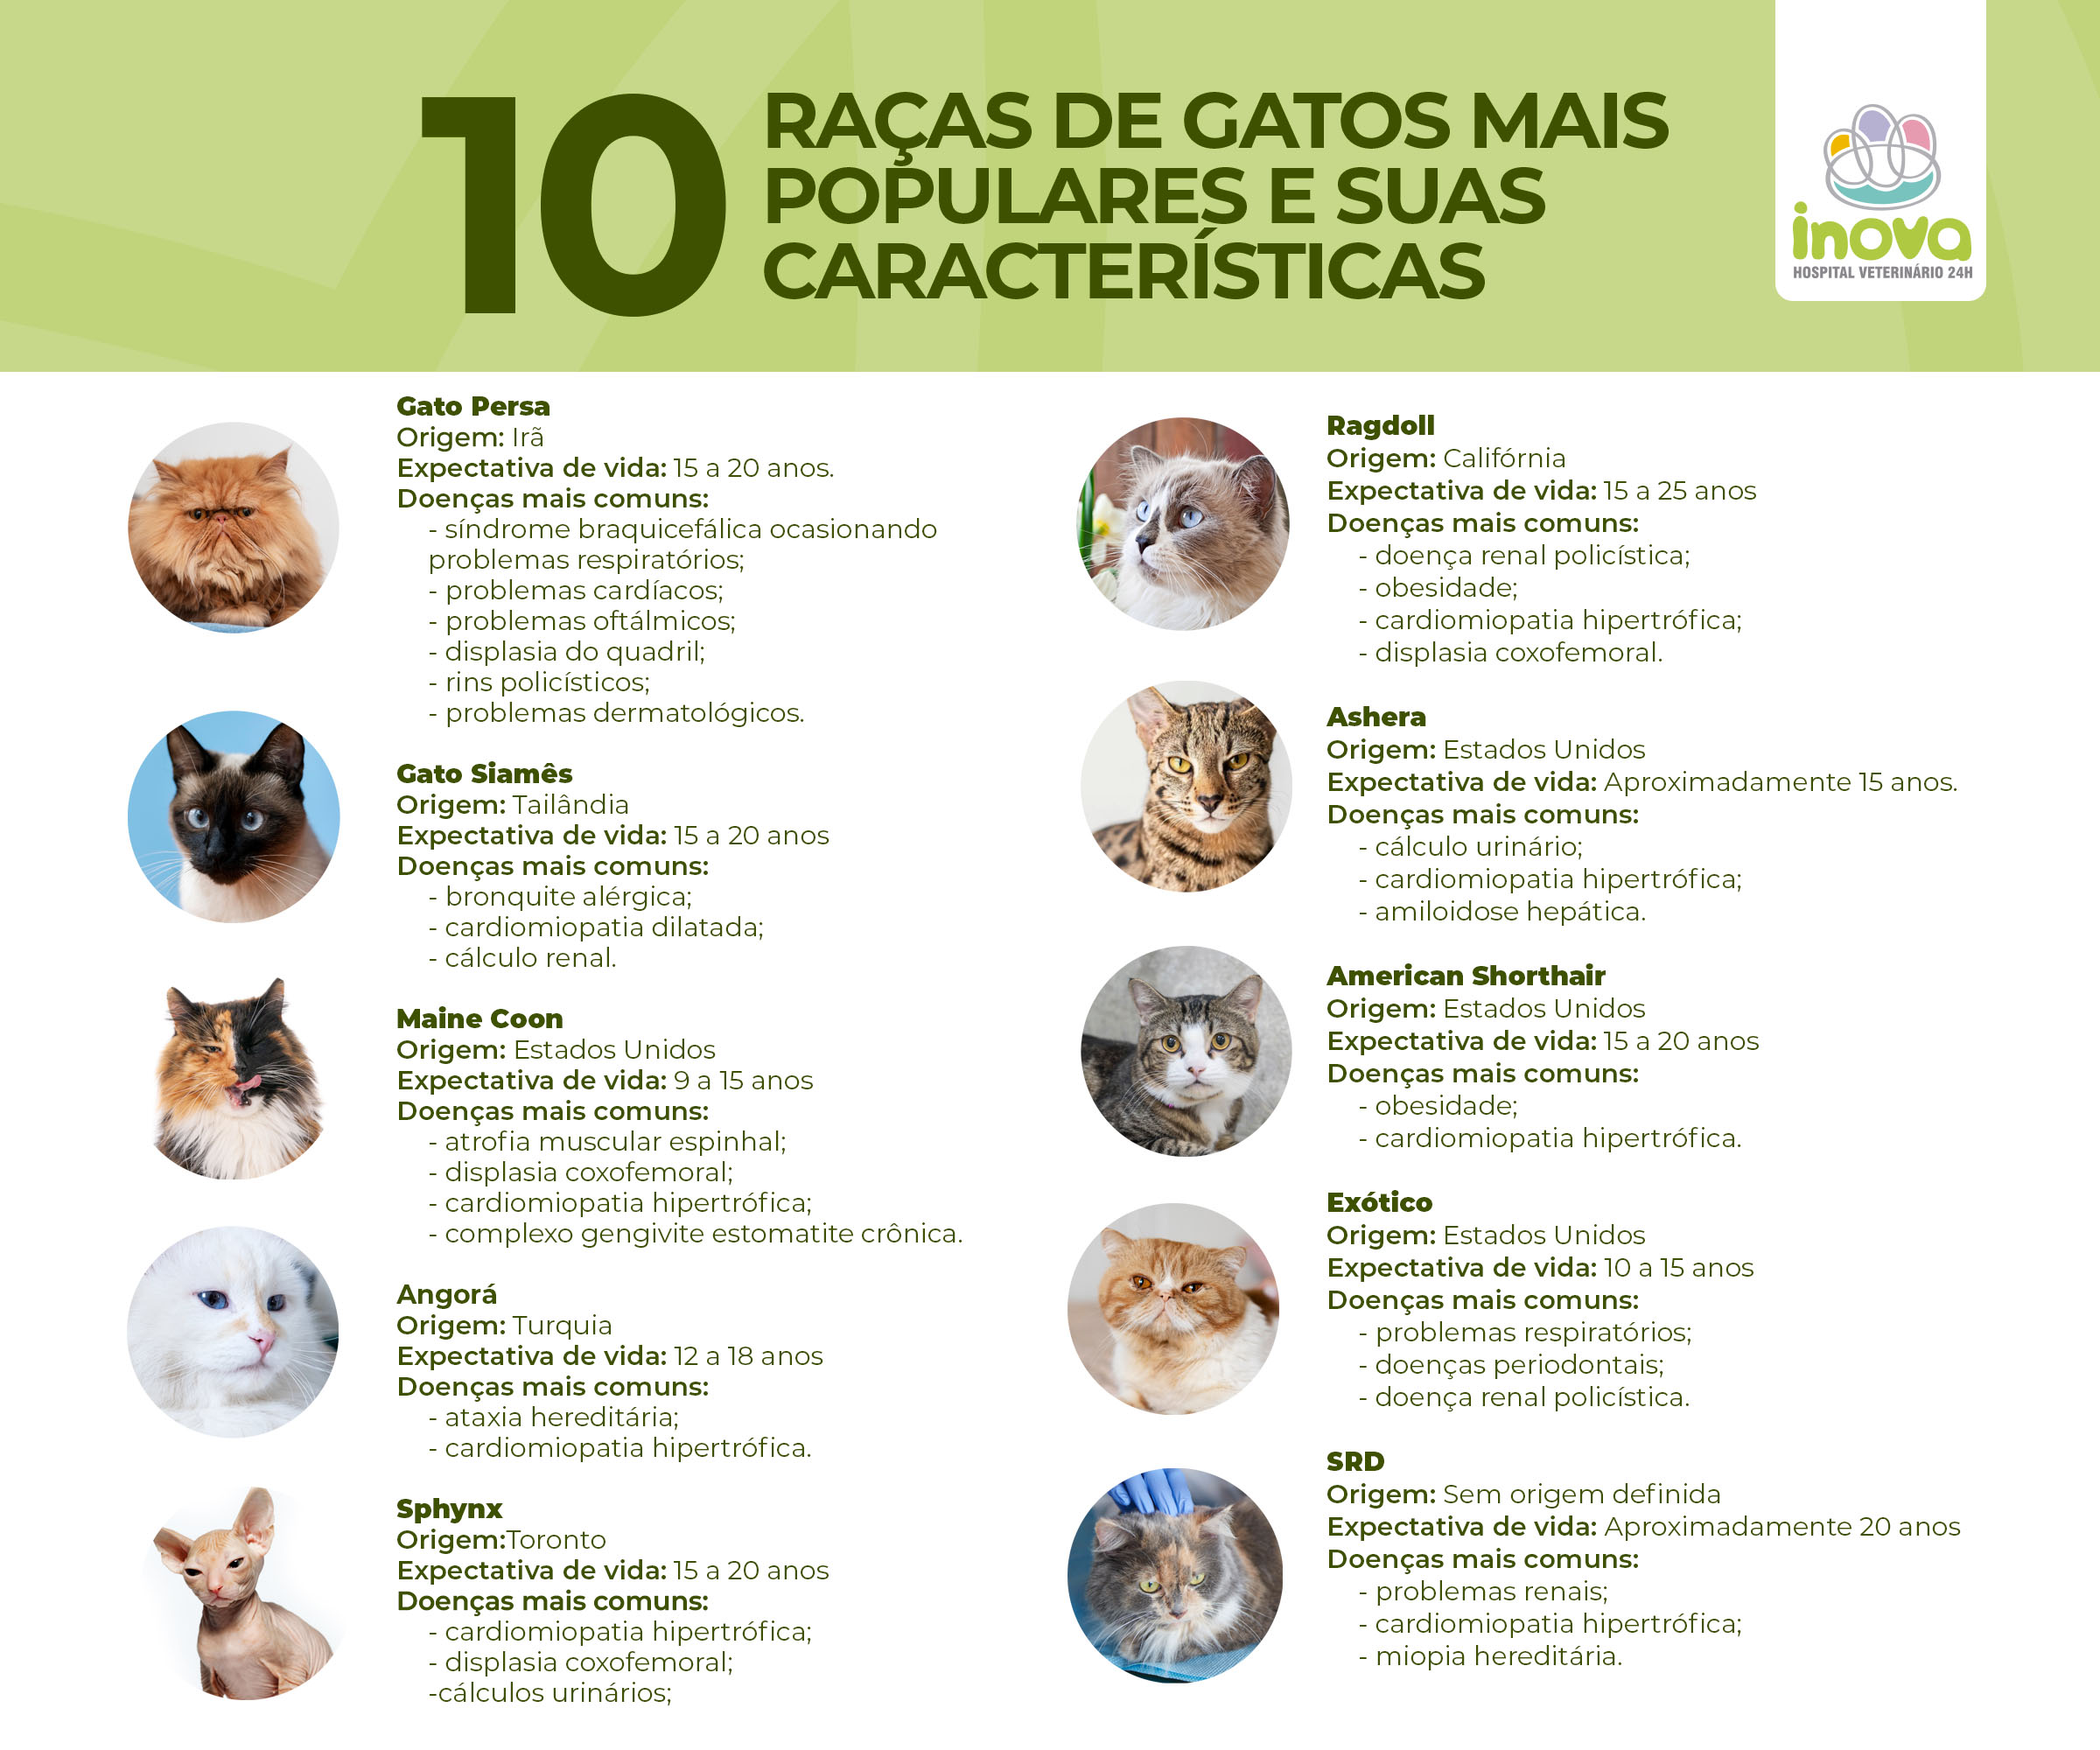 Imagem com 10 raças de gatos descrevendo sua origem, expectativa de vida e quais doenças mais comuns de cada raça